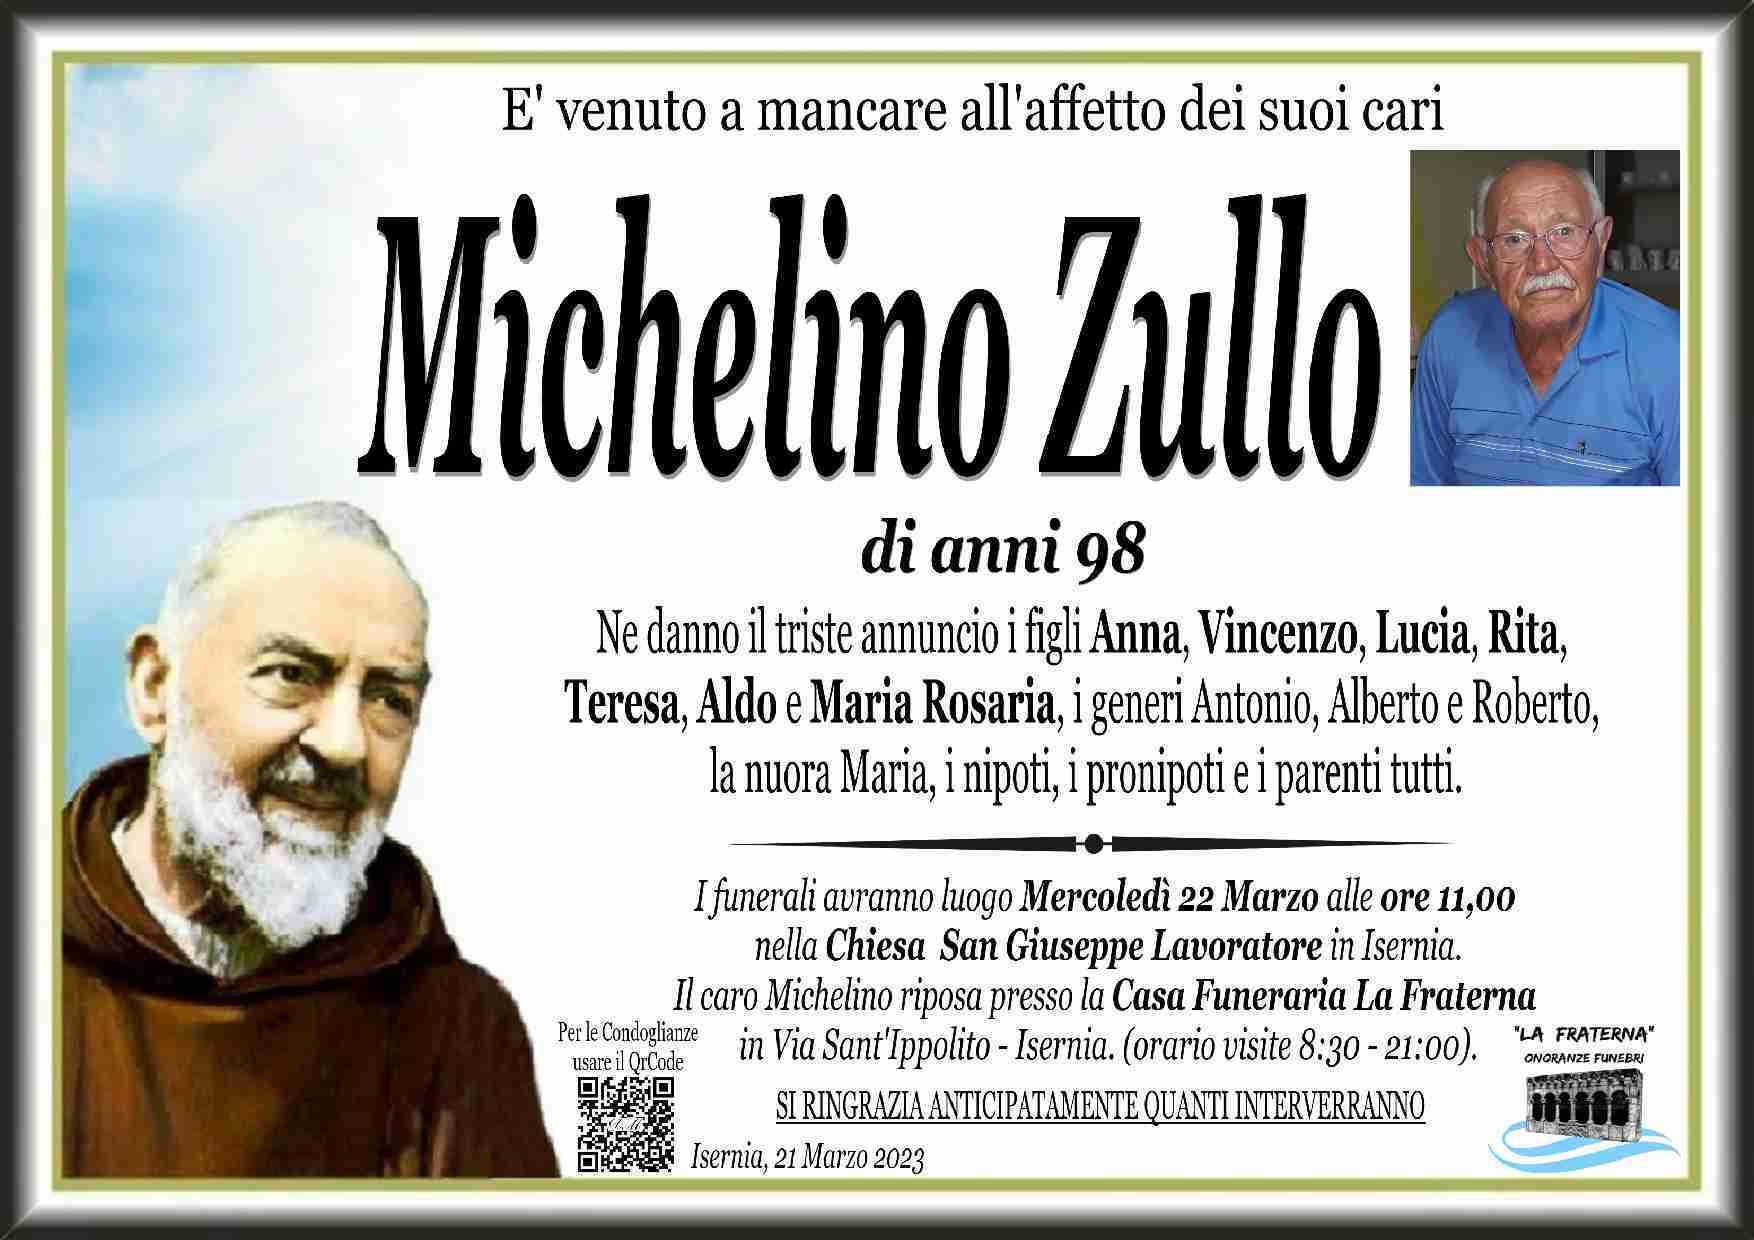 Michelino Zullo